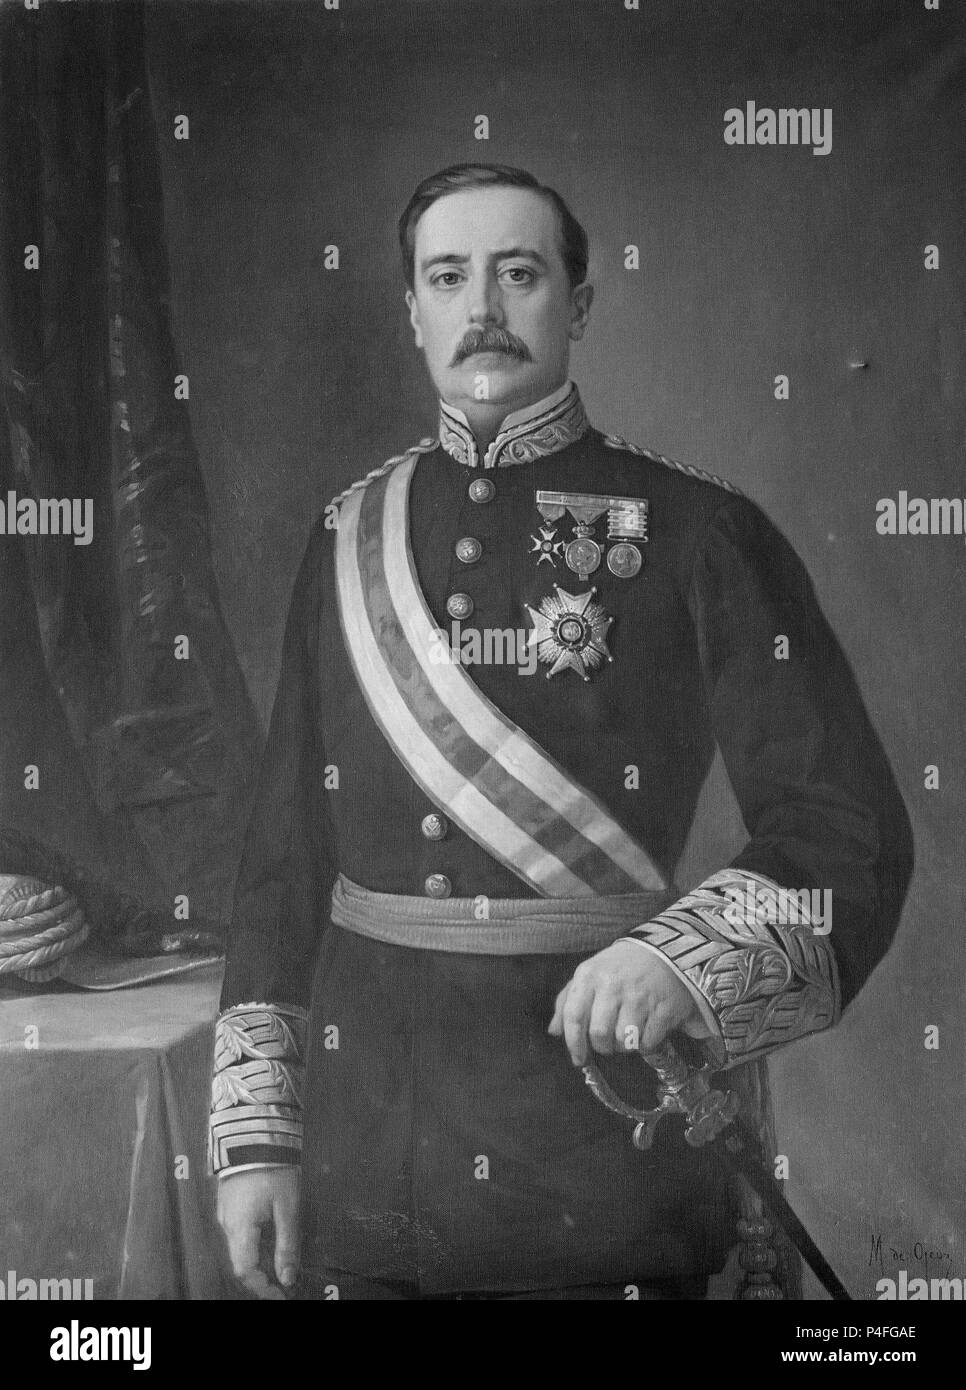 CARLOS GARCIA DE TASSARA - SENADOR DE 1881 A 1886 - 1880-L 1,27 x 0,96 - Nº INVENTARIO 94. Autor: Manuel ojeda y Siles (1835-1904). Lage: SENADO - PINTURA, MADRID, SPANIEN. Stockfoto